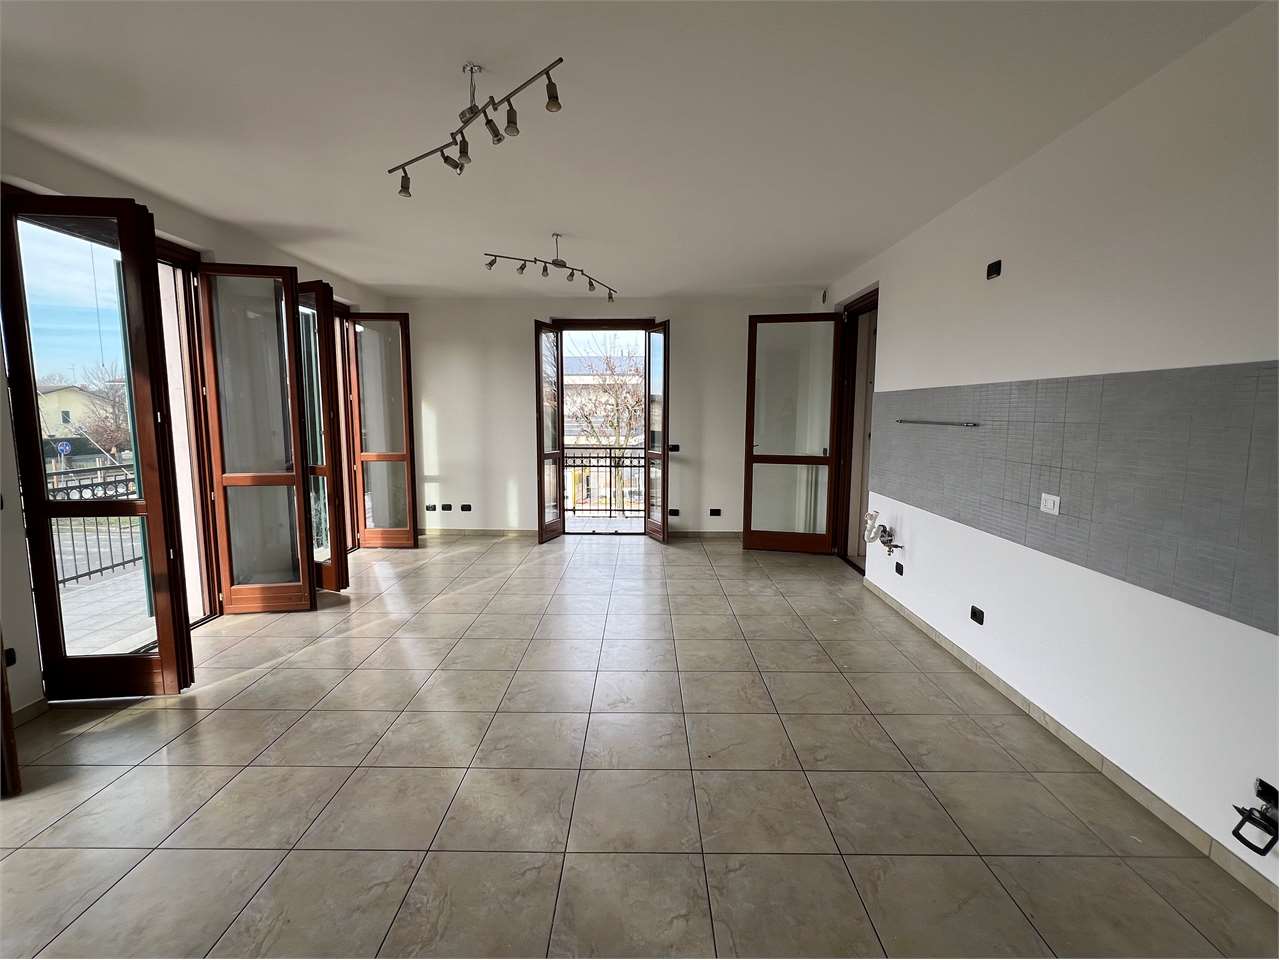 Appartamento in vendita a Mozzecane, 6 locali, prezzo € 205.000 | PortaleAgenzieImmobiliari.it